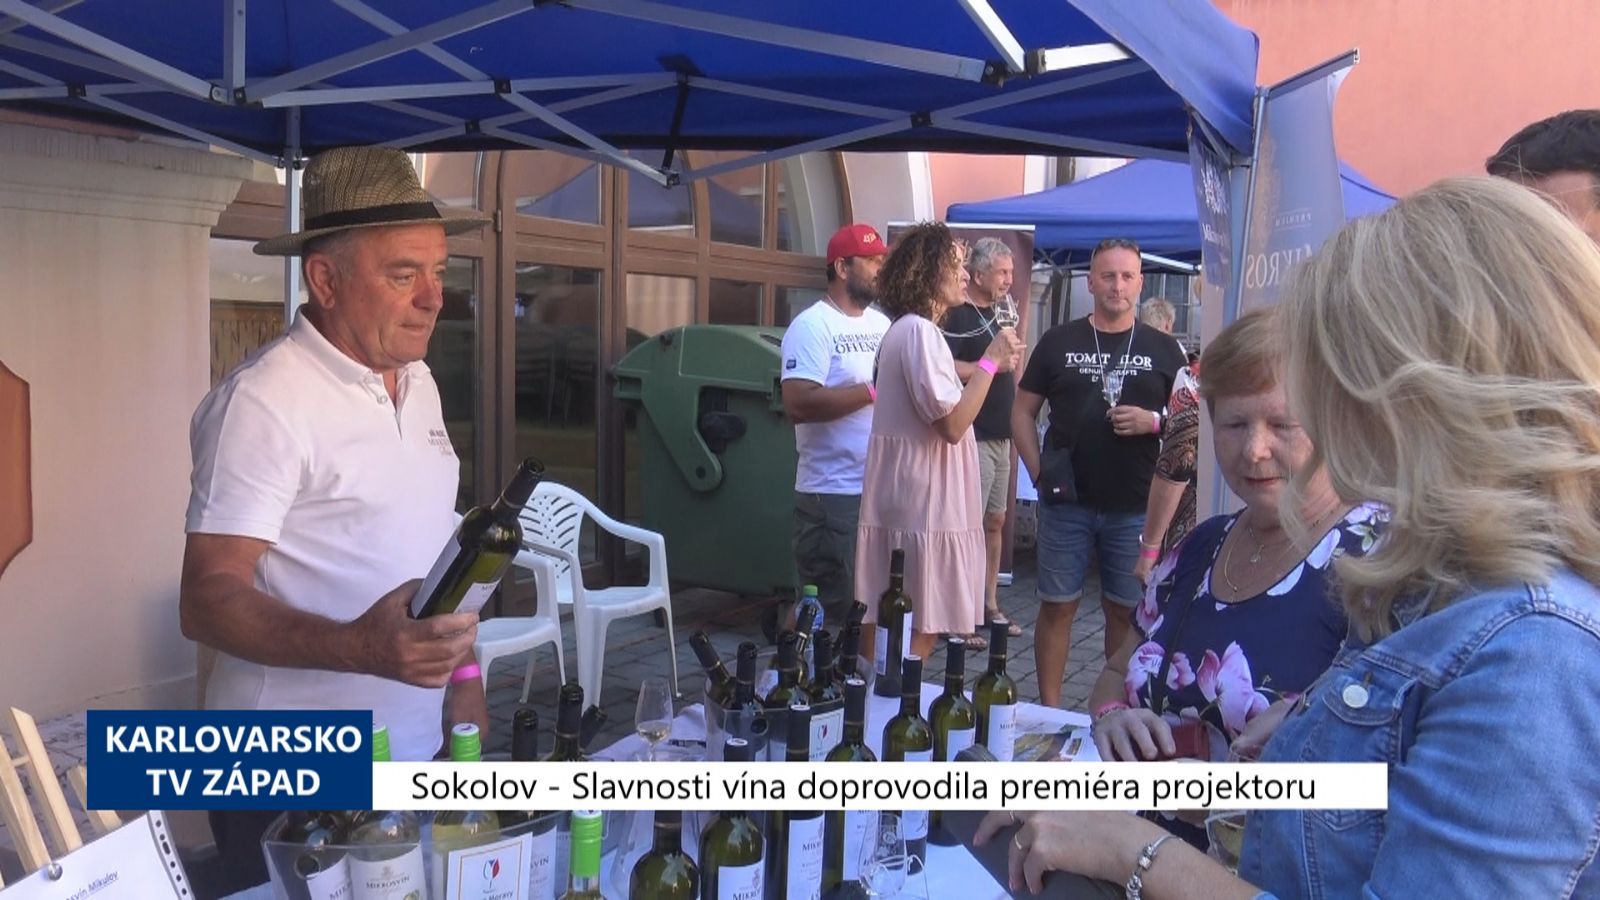 Sokolov: Slavnosti vína doprovodila premiéra projektoru (TV Západ)